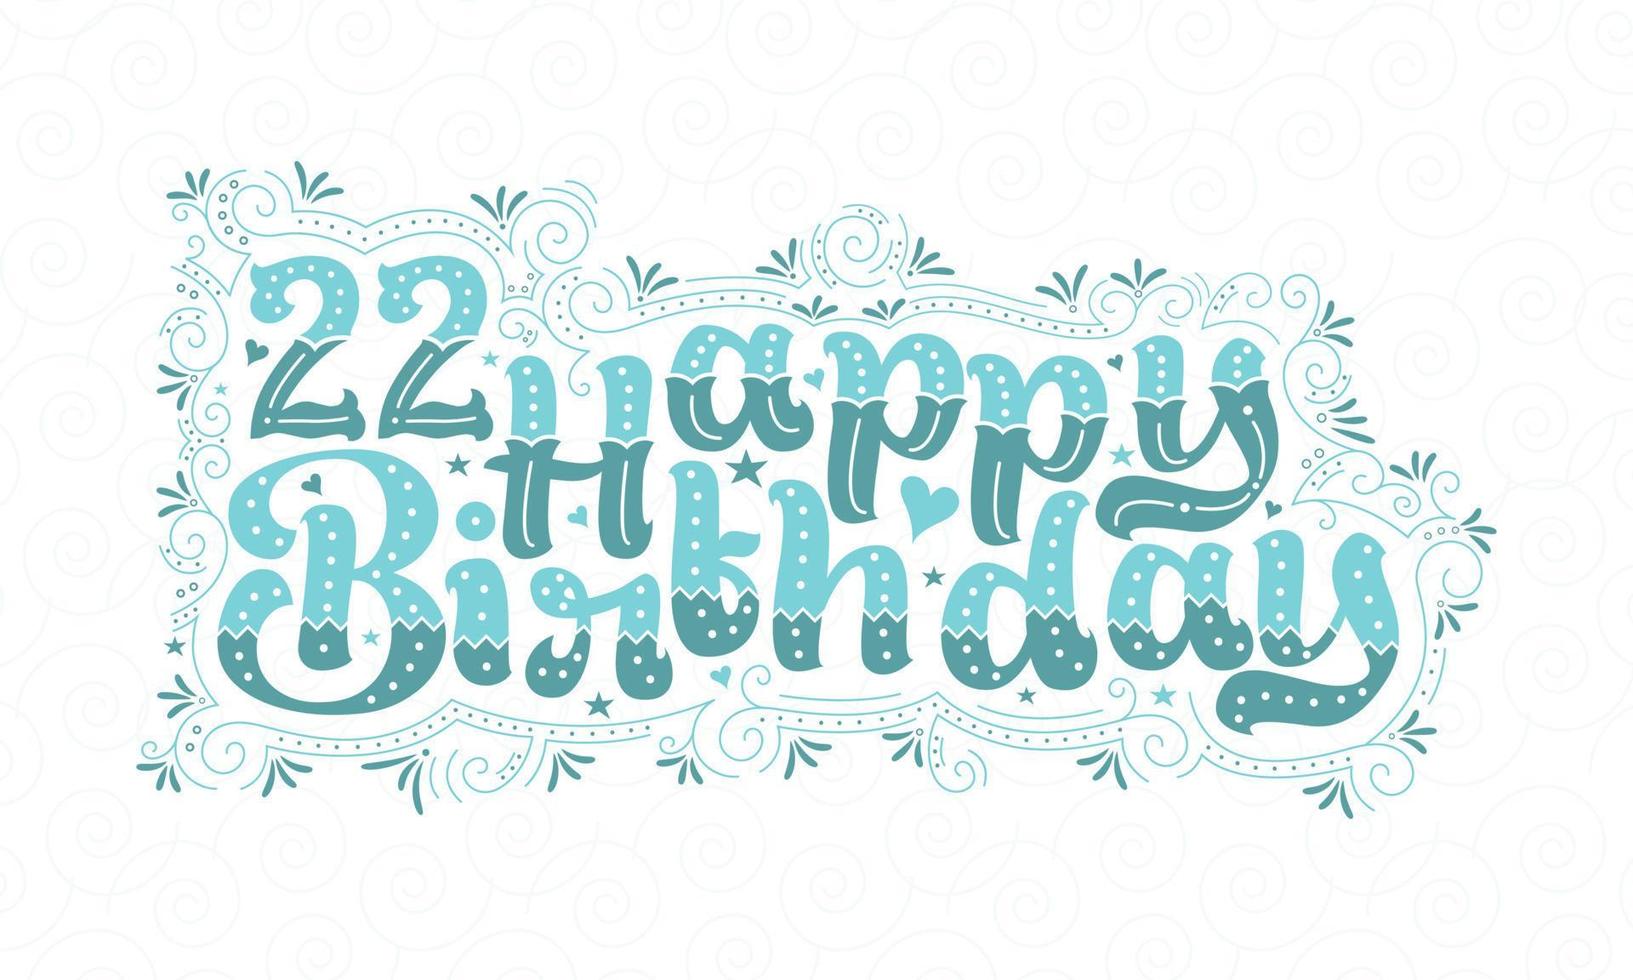 22e lettrage de joyeux anniversaire, 22 ans d'anniversaire belle conception de typographie avec des points, des lignes et des feuilles aqua. vecteur